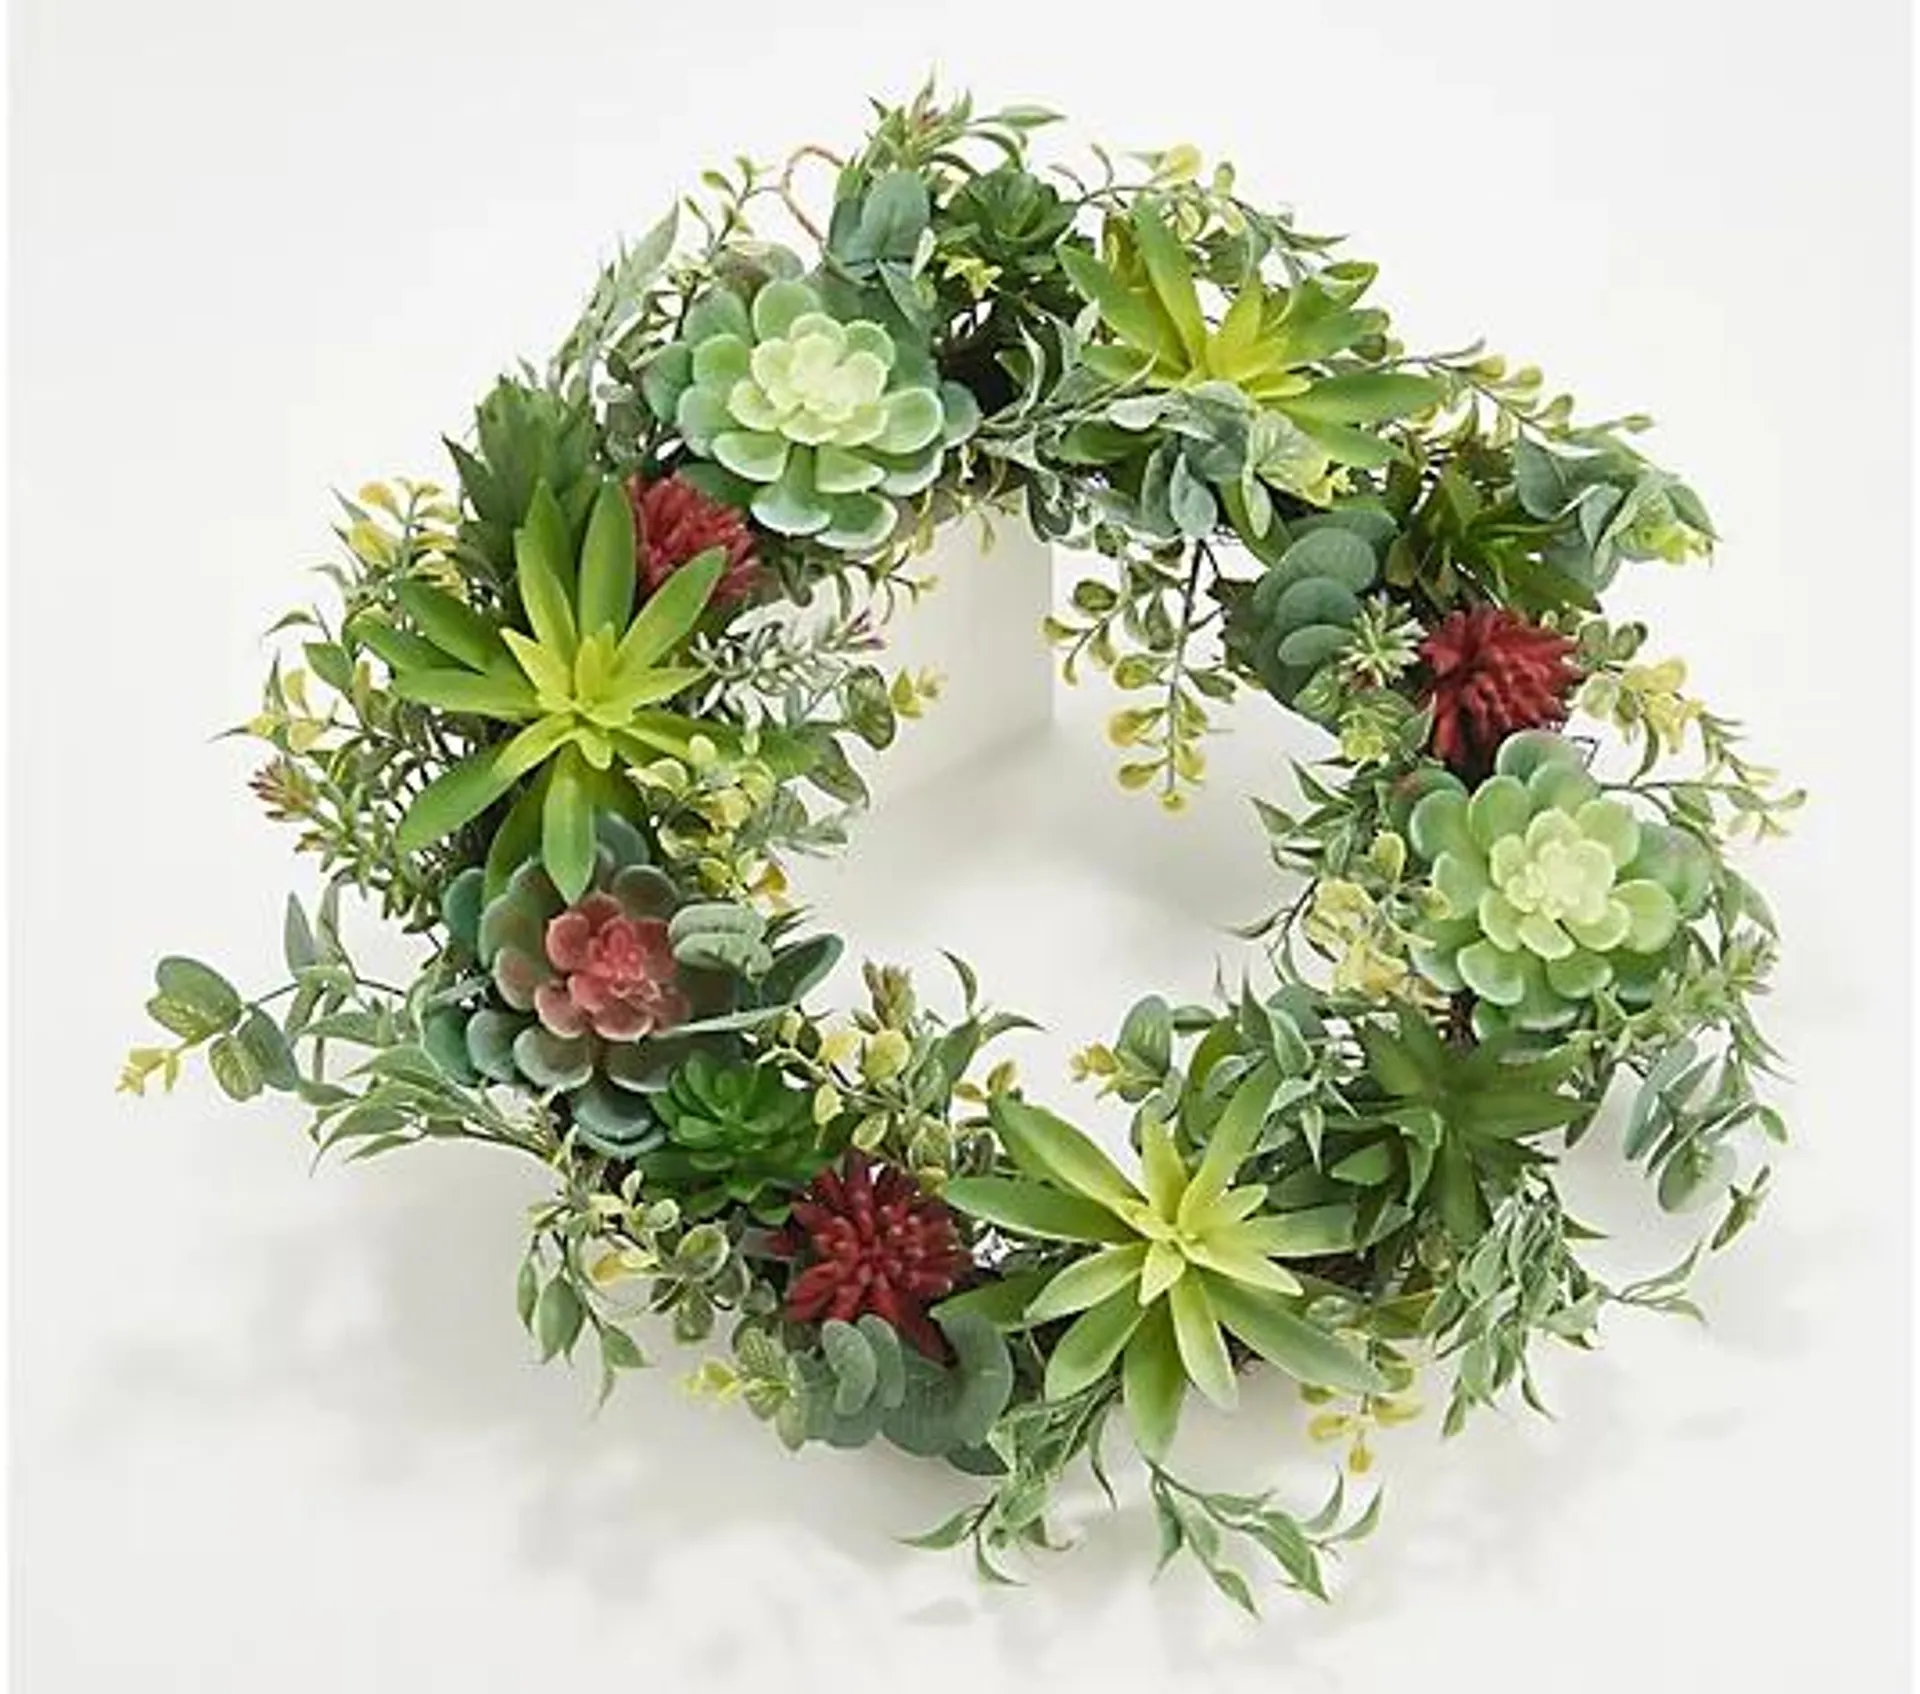 Barbara King 22" Faux Succulent Indoor/Outdoor Wreath